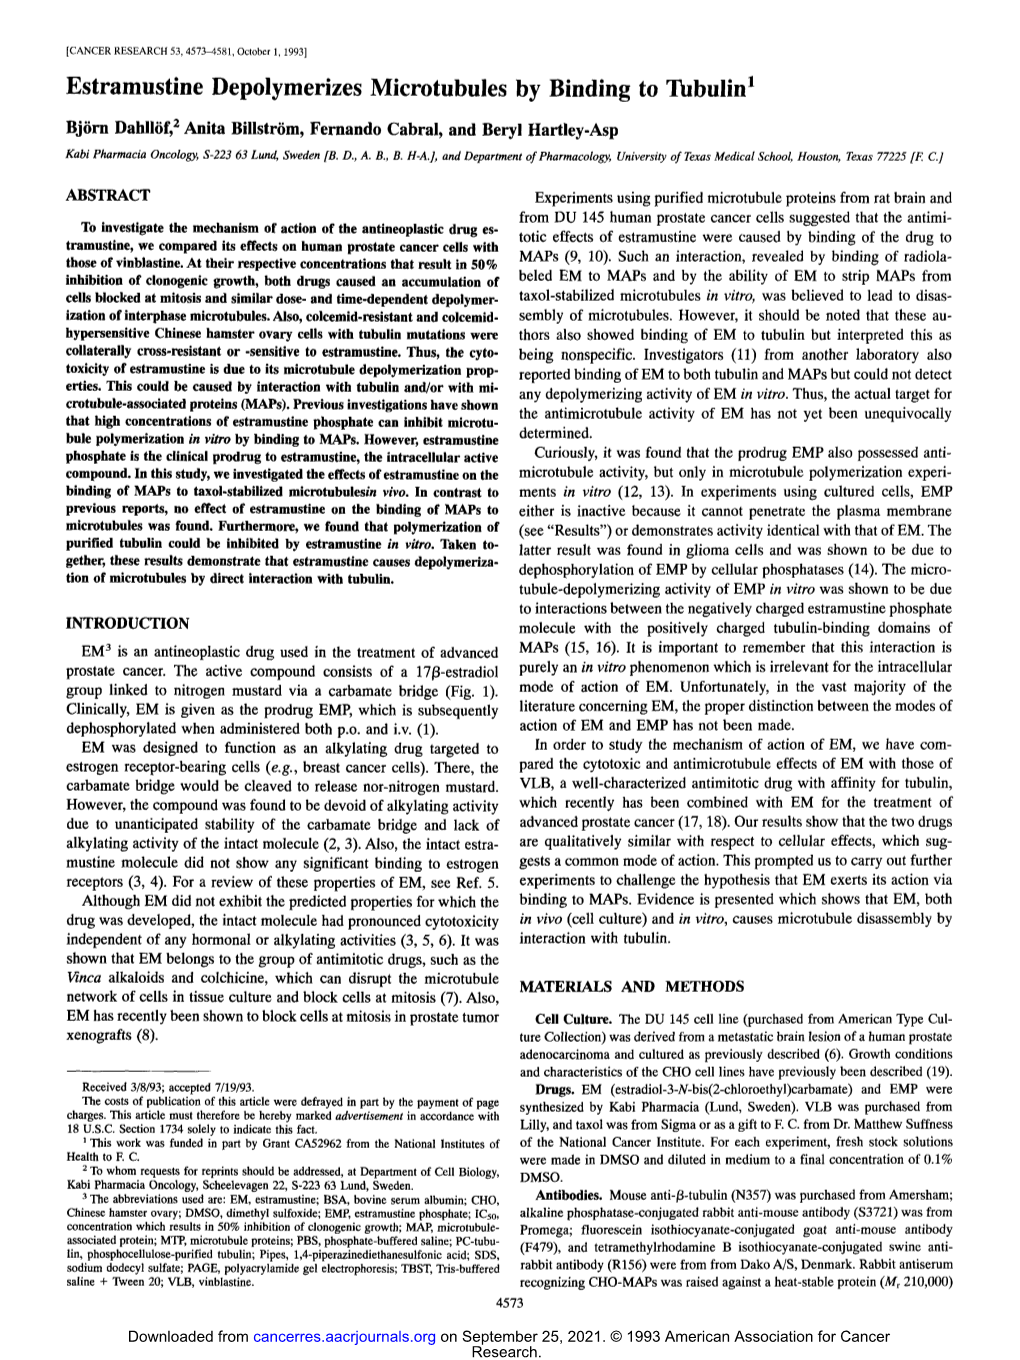 Estramustine Depolymerizes Microtnbules by Binding to Tubulin 1